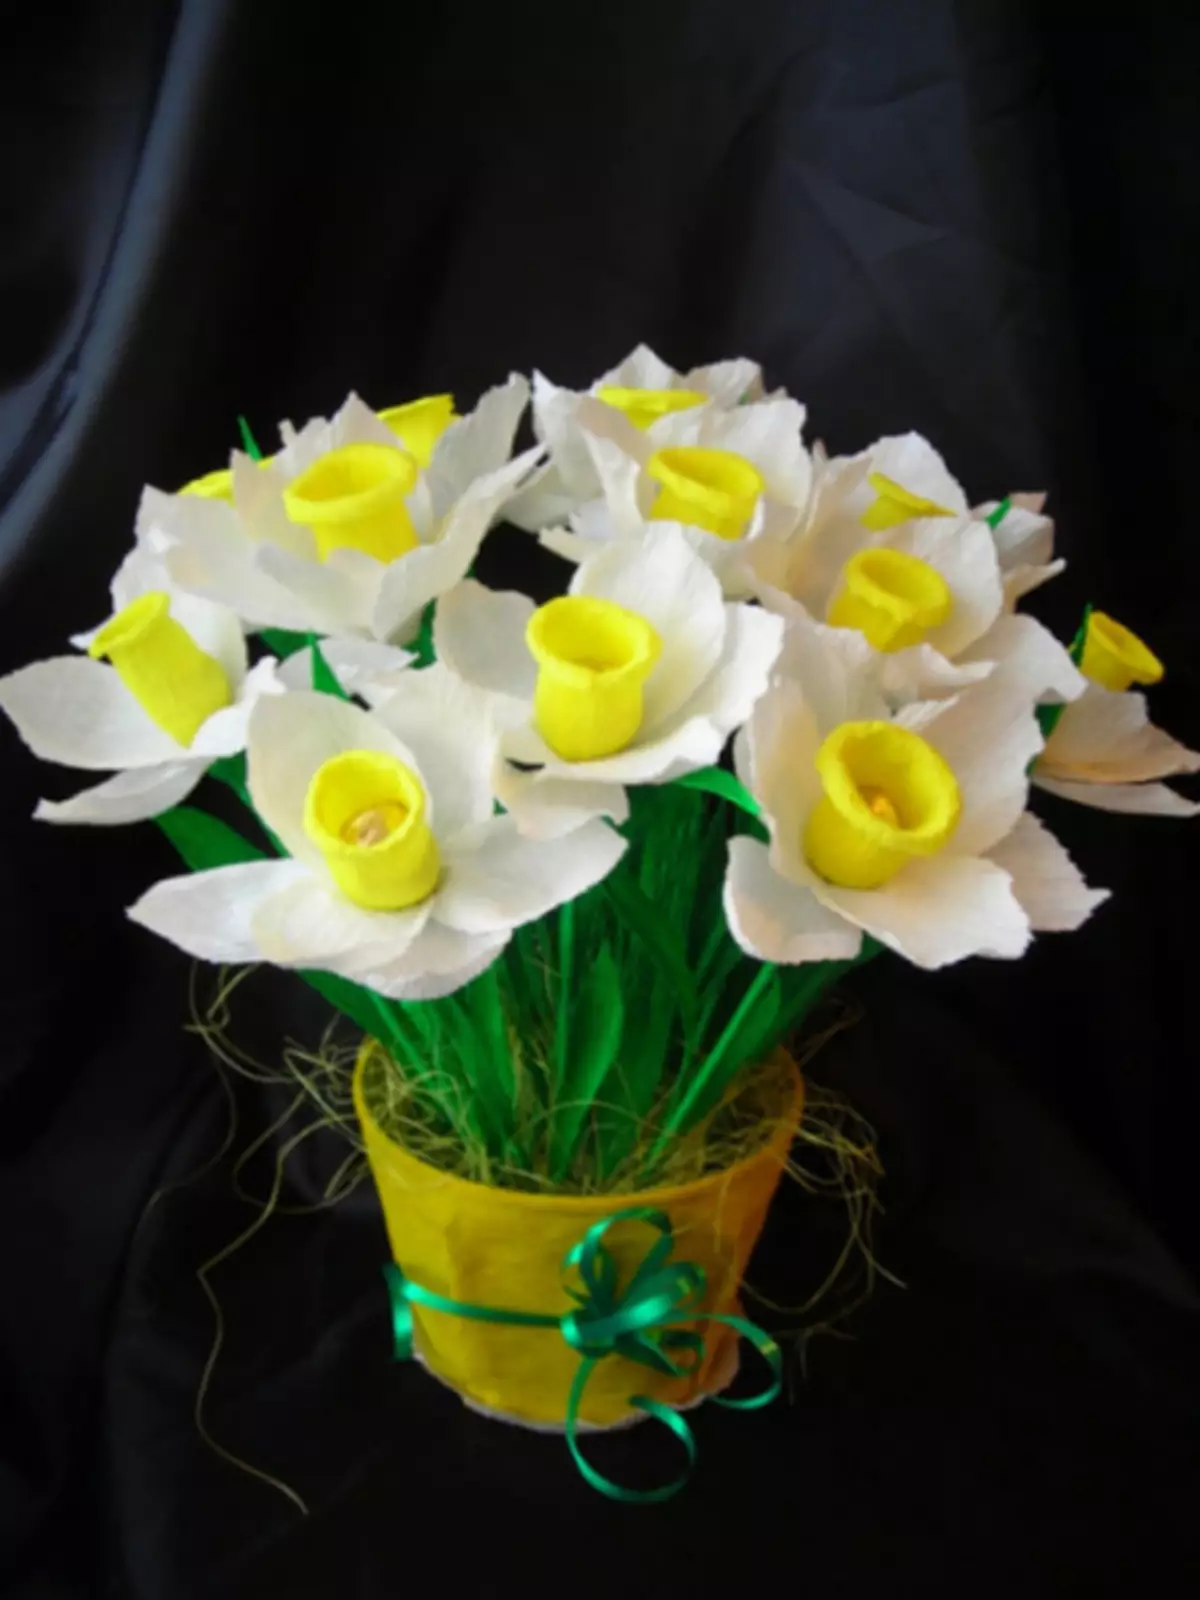 Narcissus kuchokera papepala lotetezedwa ndi manja awo omwe ali ndi maswiti